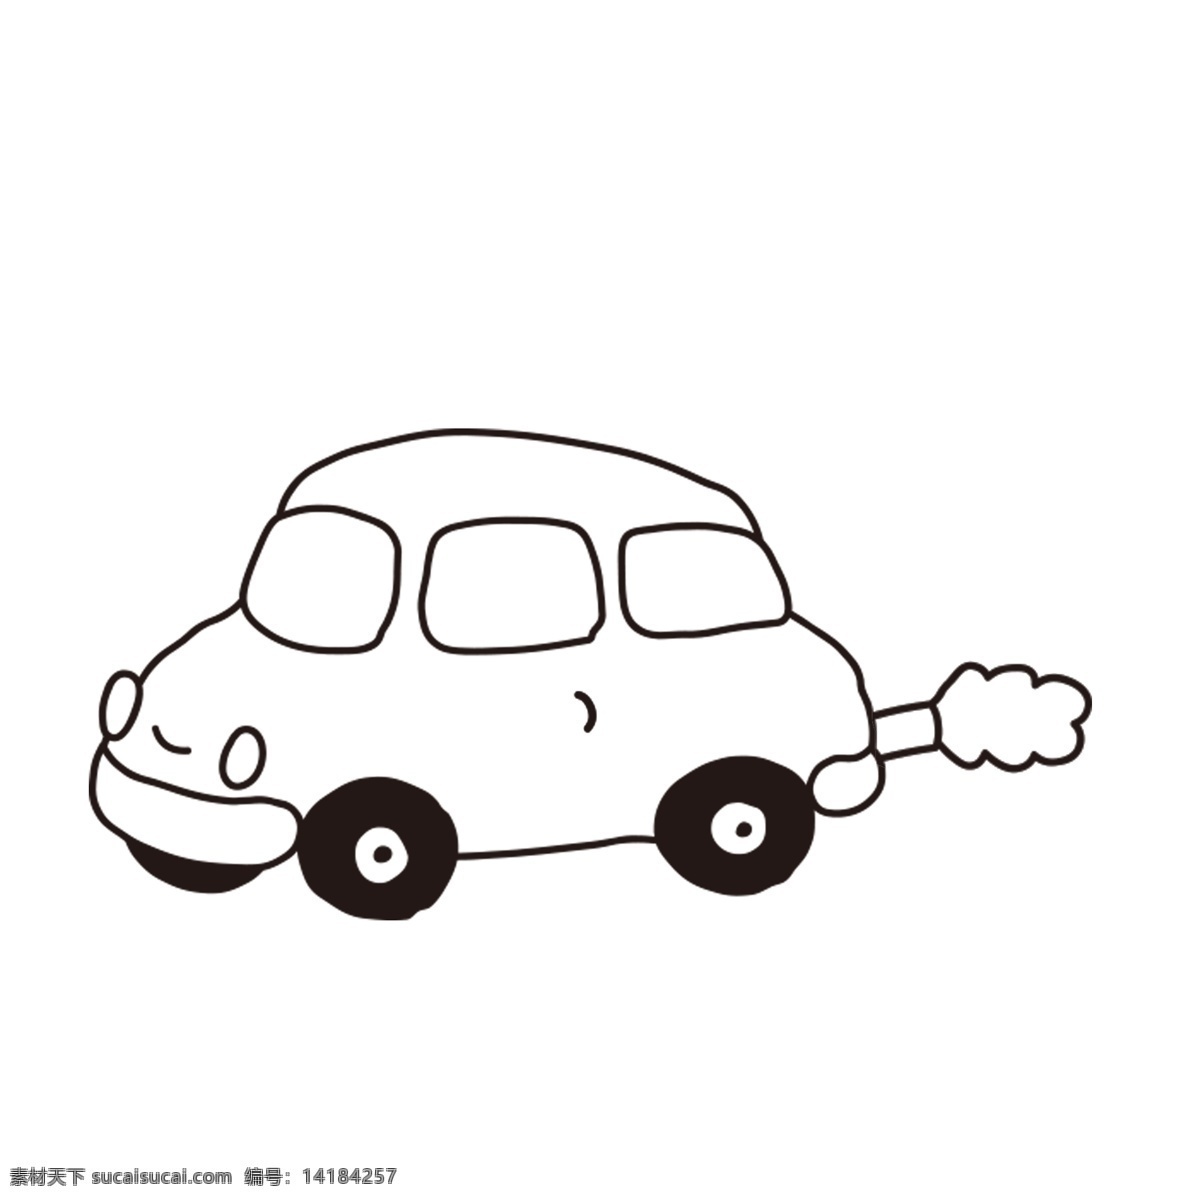 手绘 小汽车 设计素材 卡通汽车 黑白汽车 唯美汽车 矢量汽车 简约汽车图案 矢量玩具 涂鸦玩具汽车